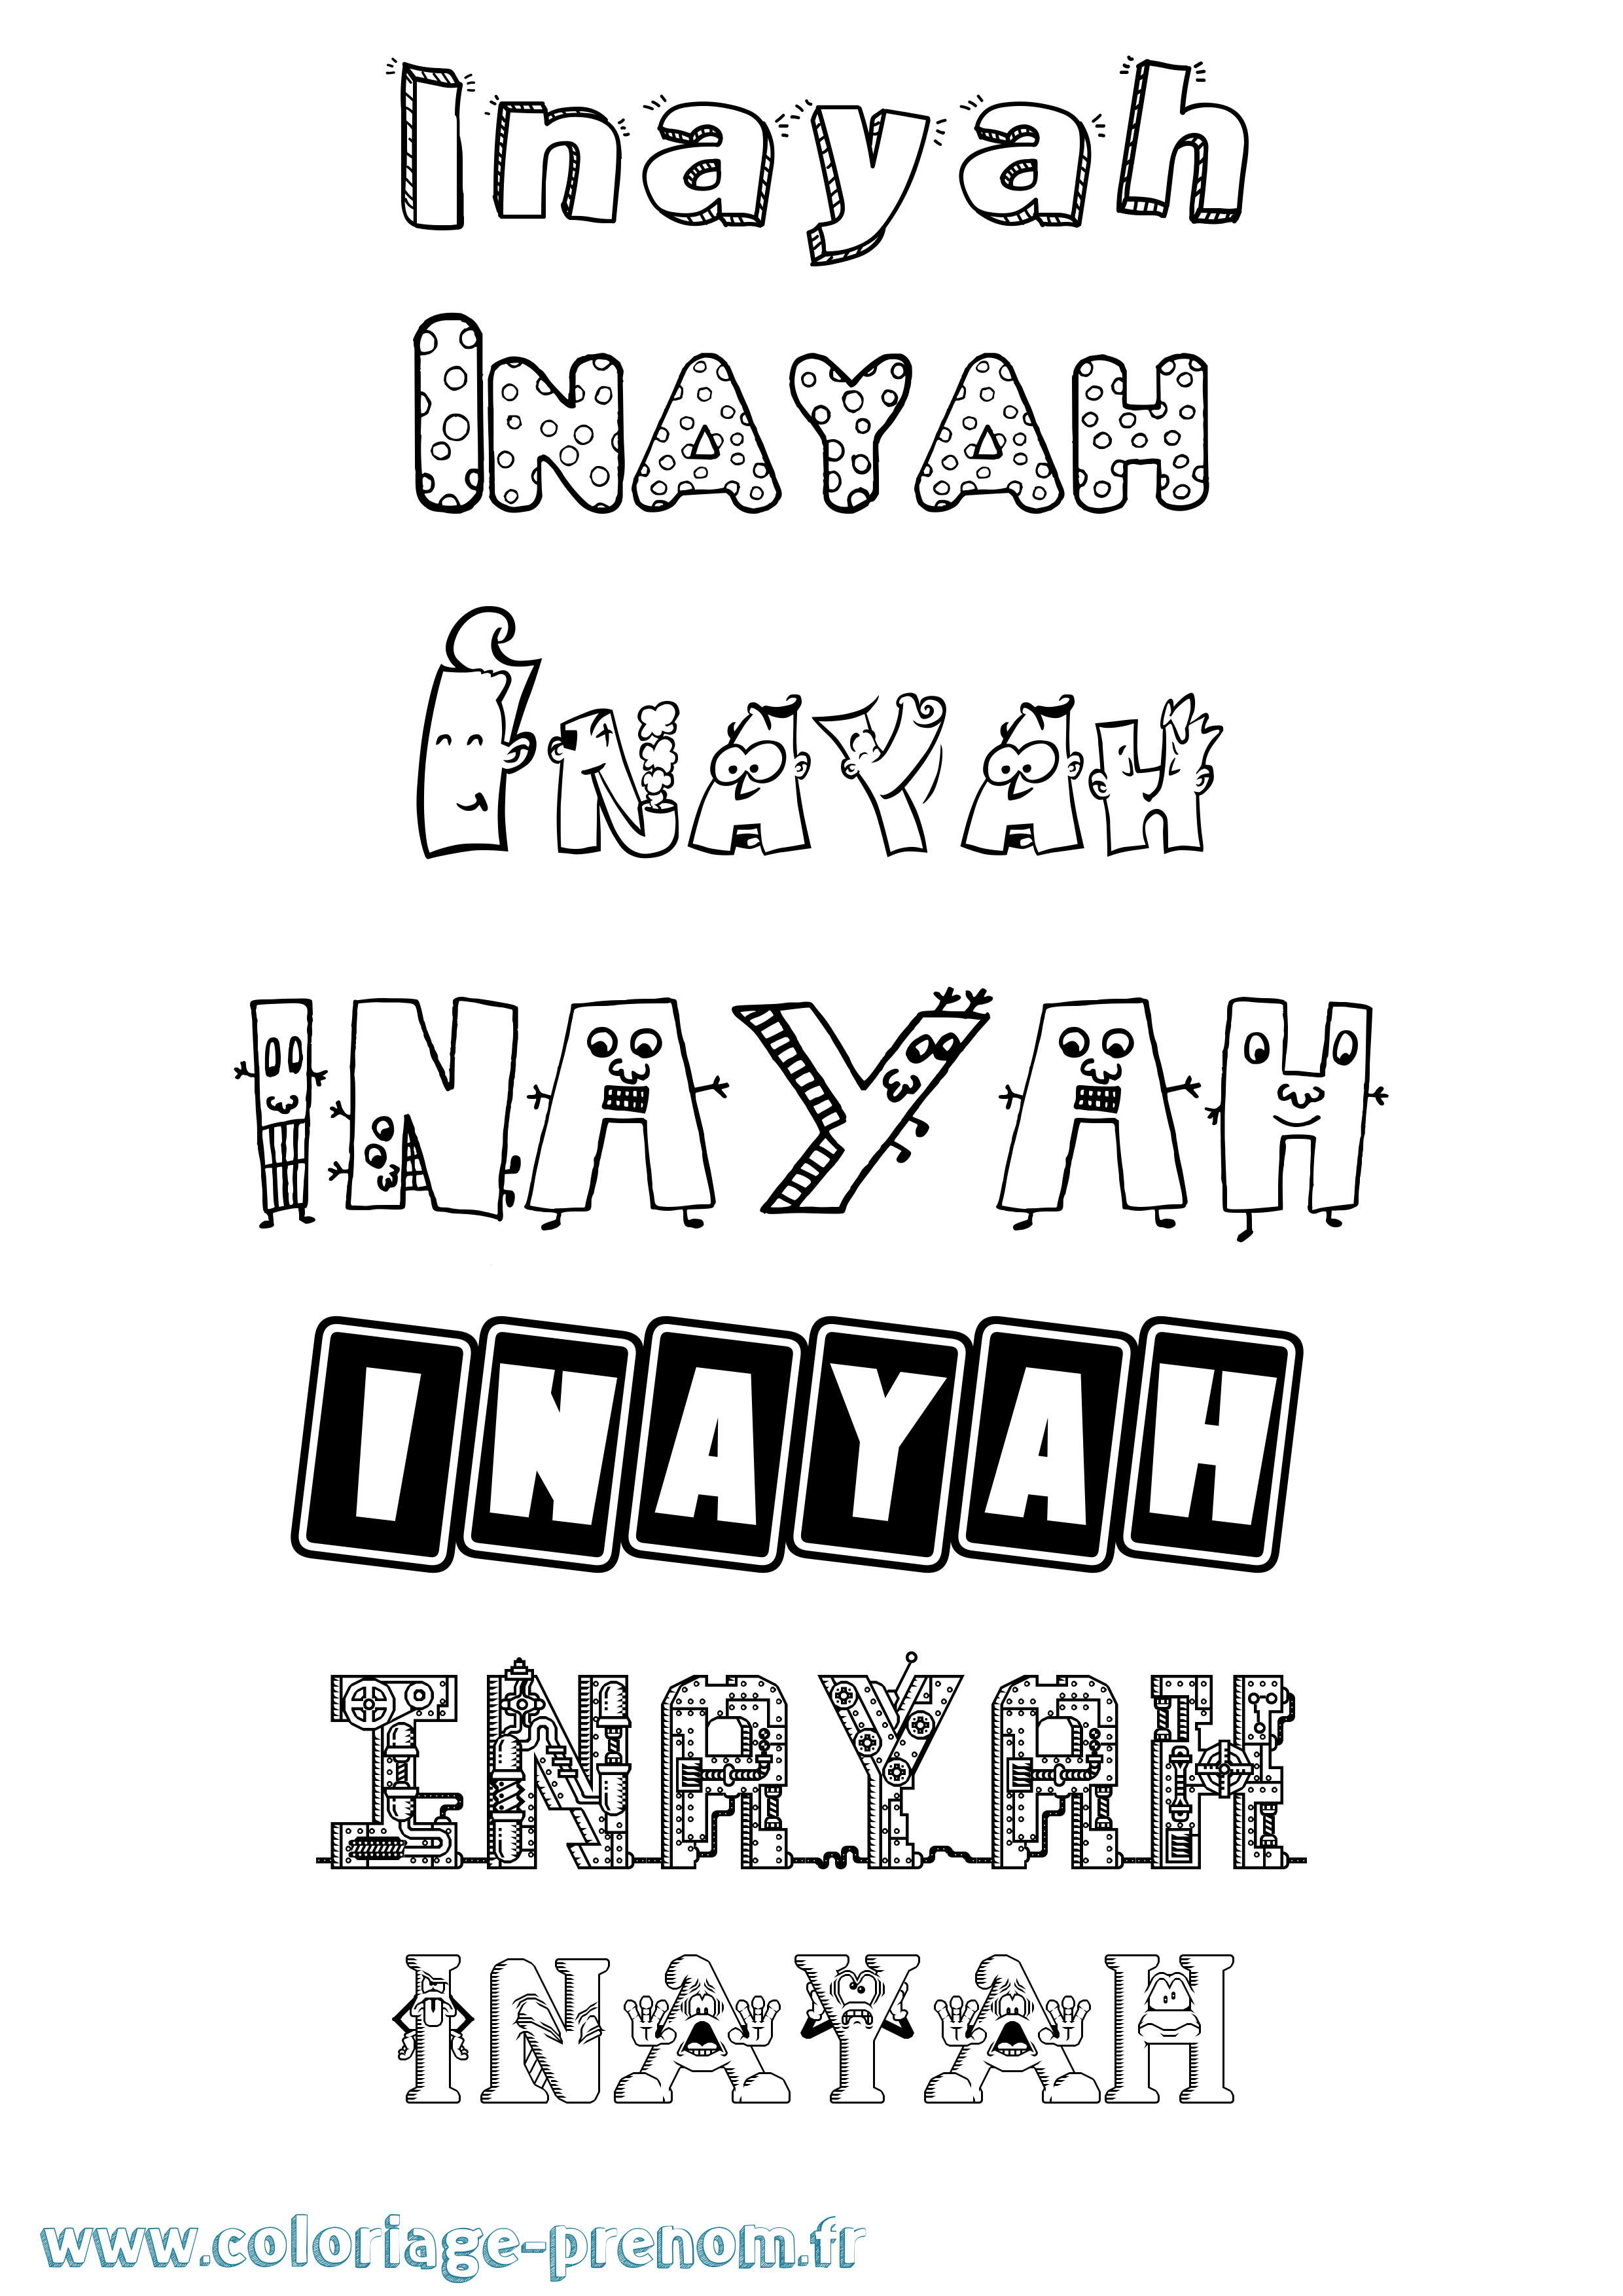 Coloriage prénom Inayah Fun